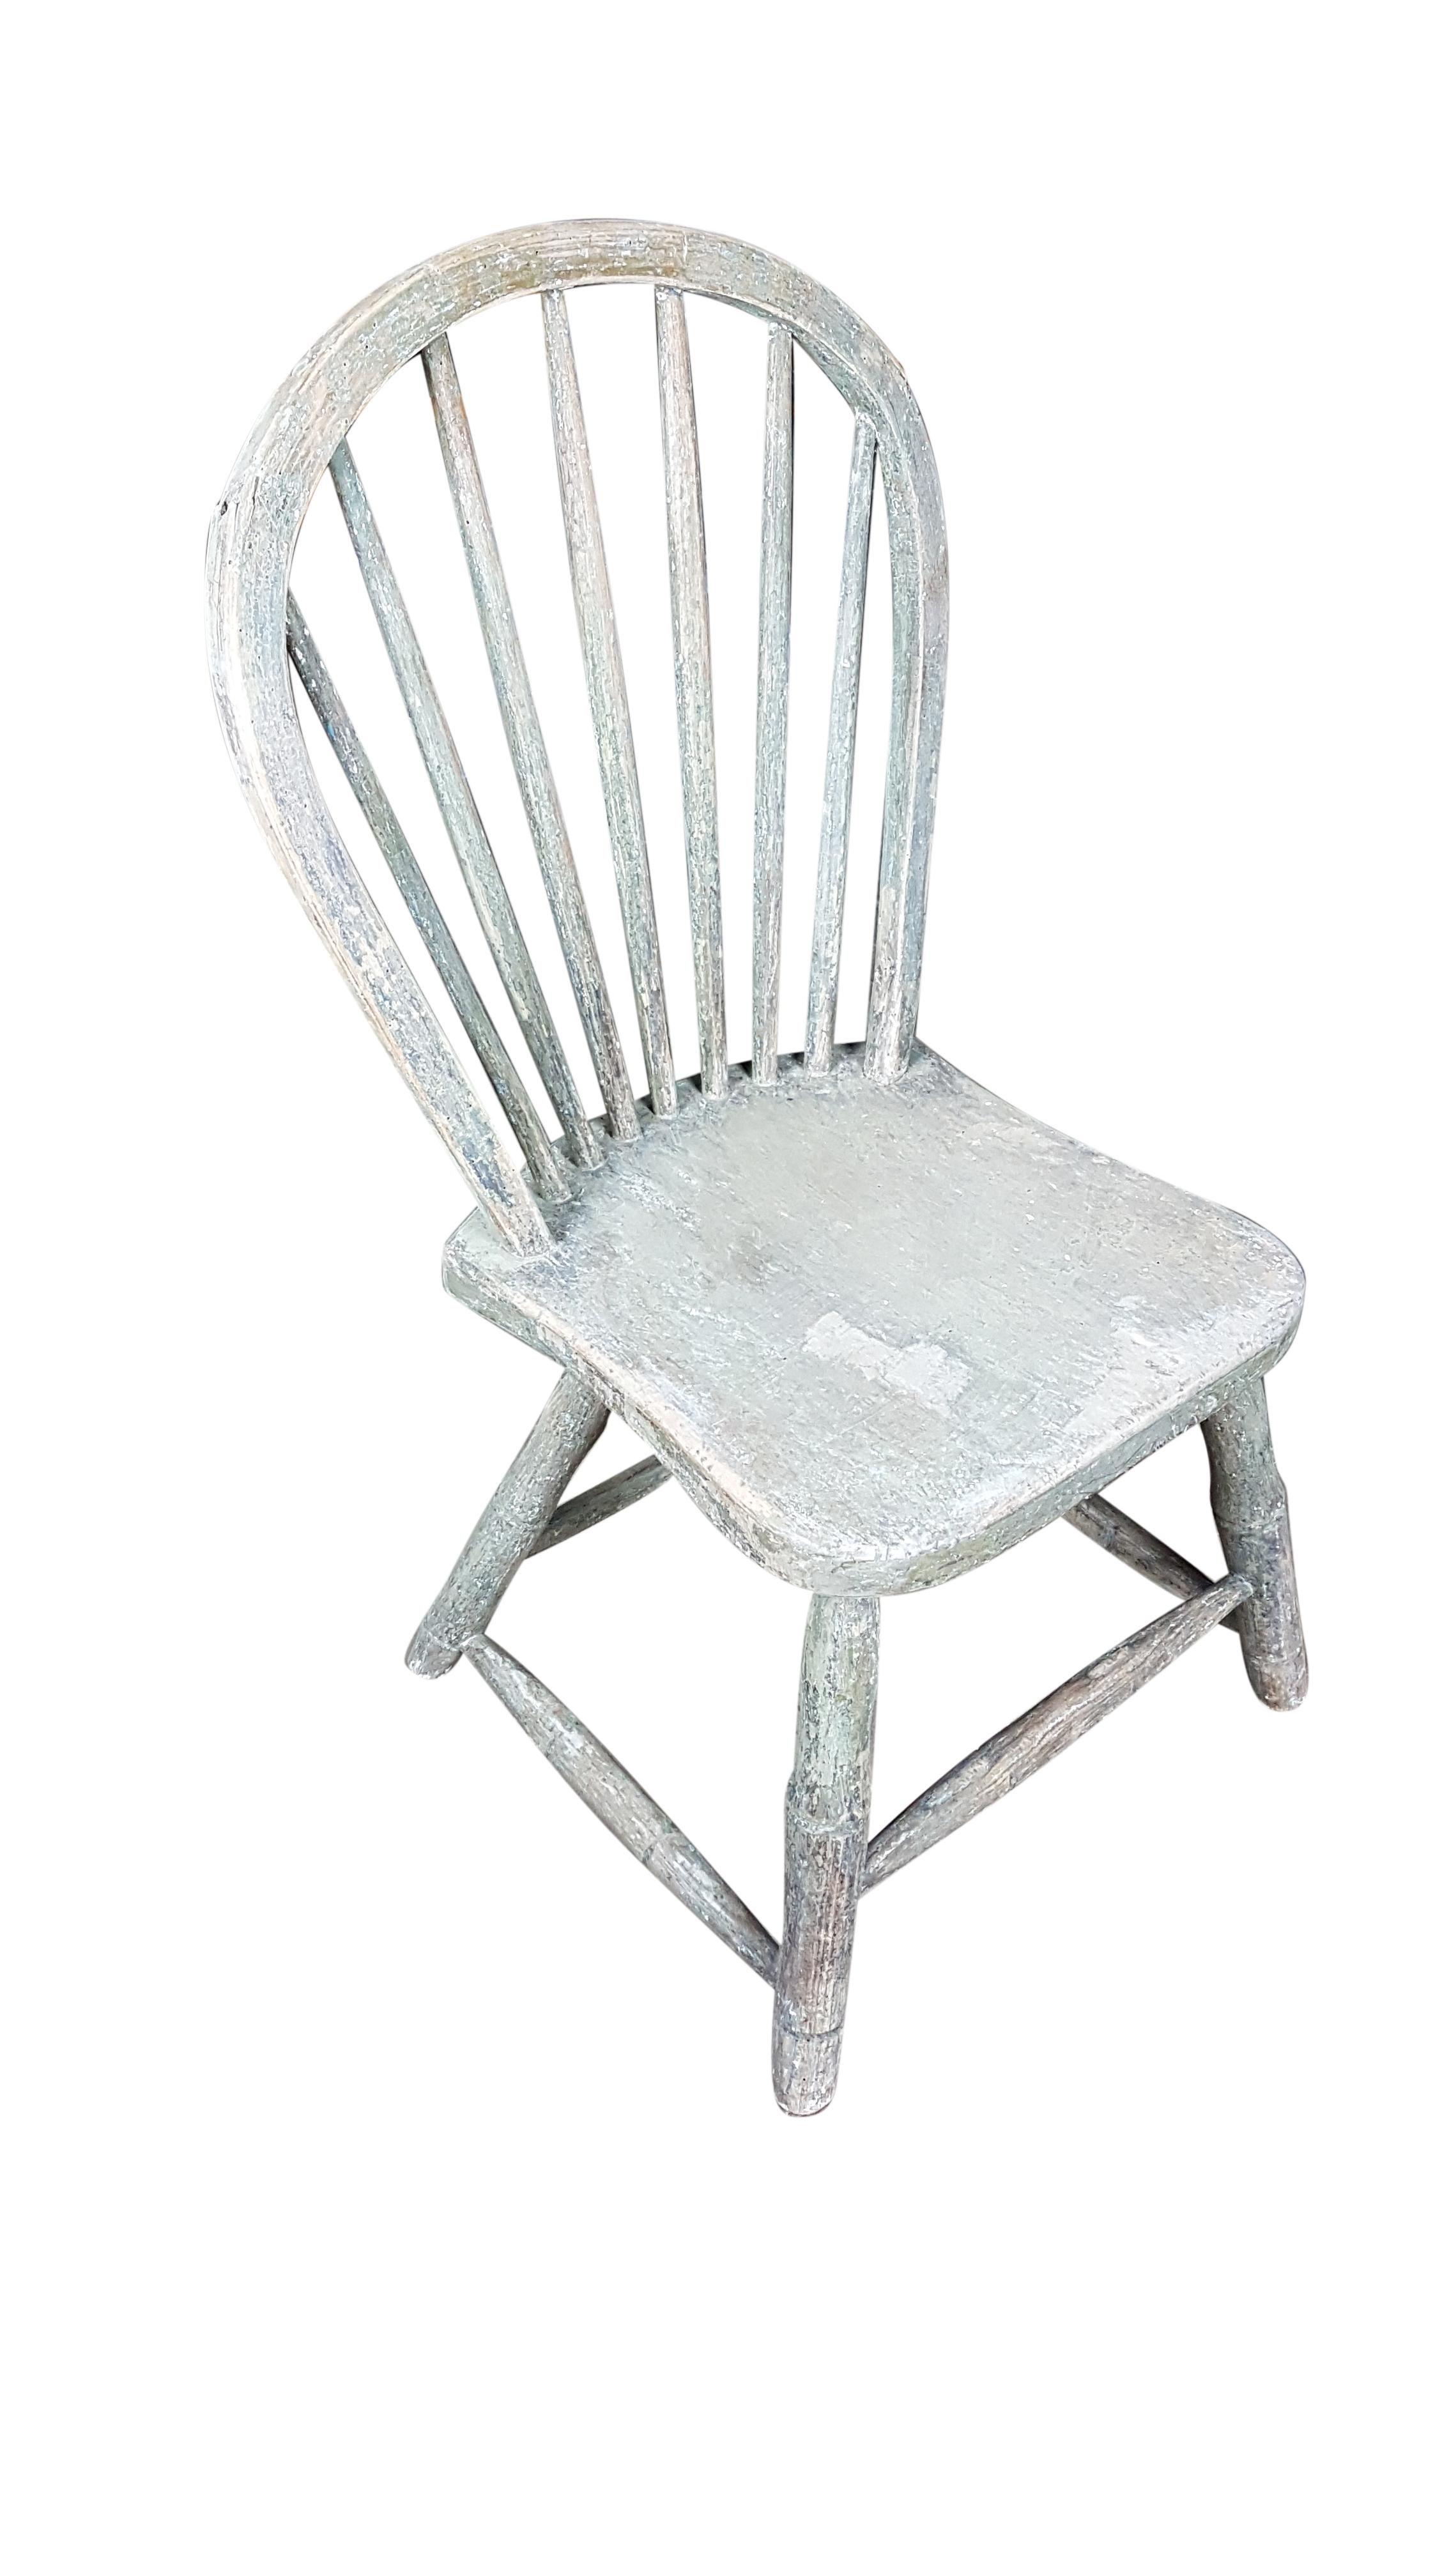 yealmpton chairs